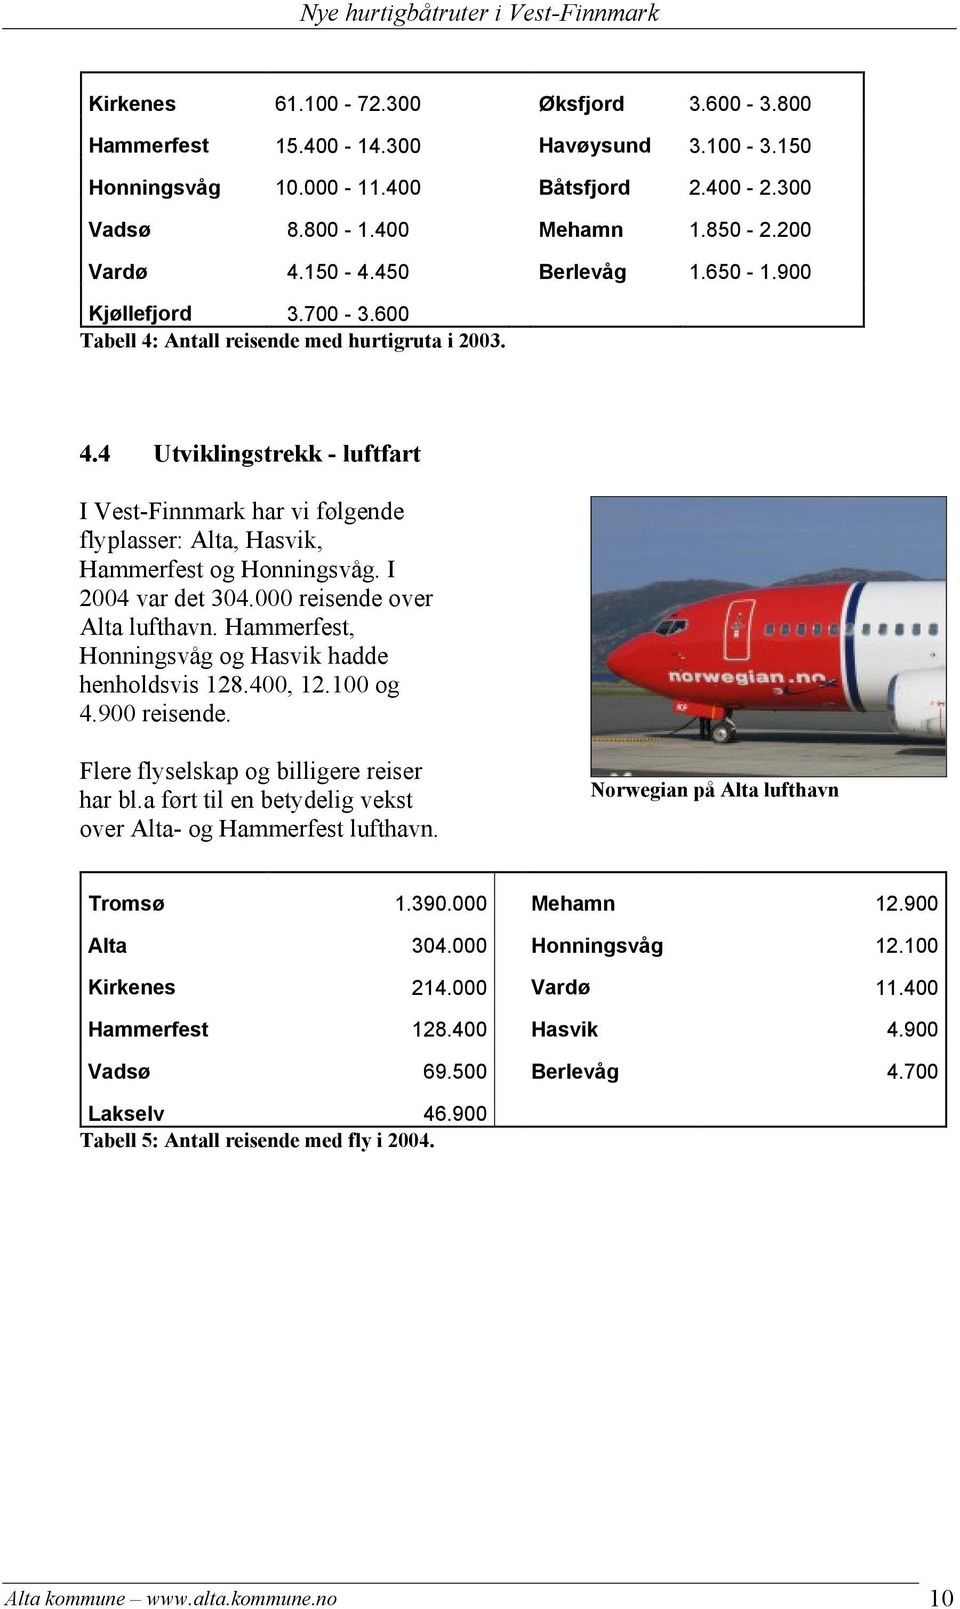 I 2004 var det 304.000 reisende over Alta lufthavn. Hammerfest, Honningsvåg og Hasvik hadde henholdsvis 128.400, 12.100 og 4.900 reisende. Flere flyselskap og billigere reiser har bl.